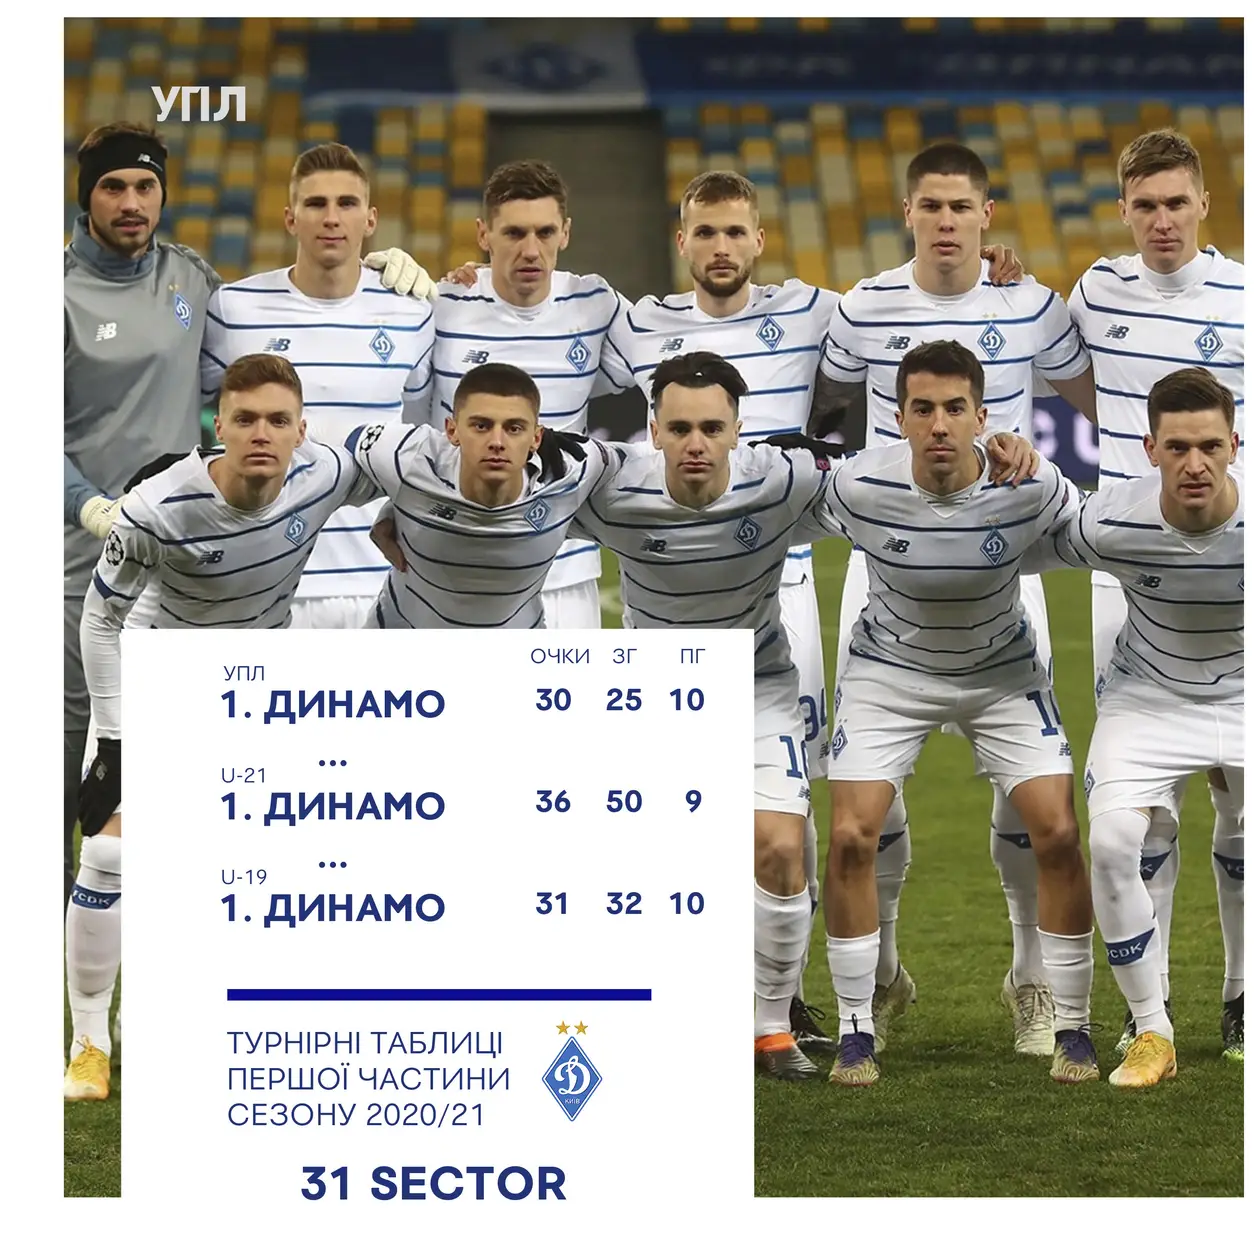 «Динамо» — лидеры первой части чемпионатов УПЛ, U-21, U-19